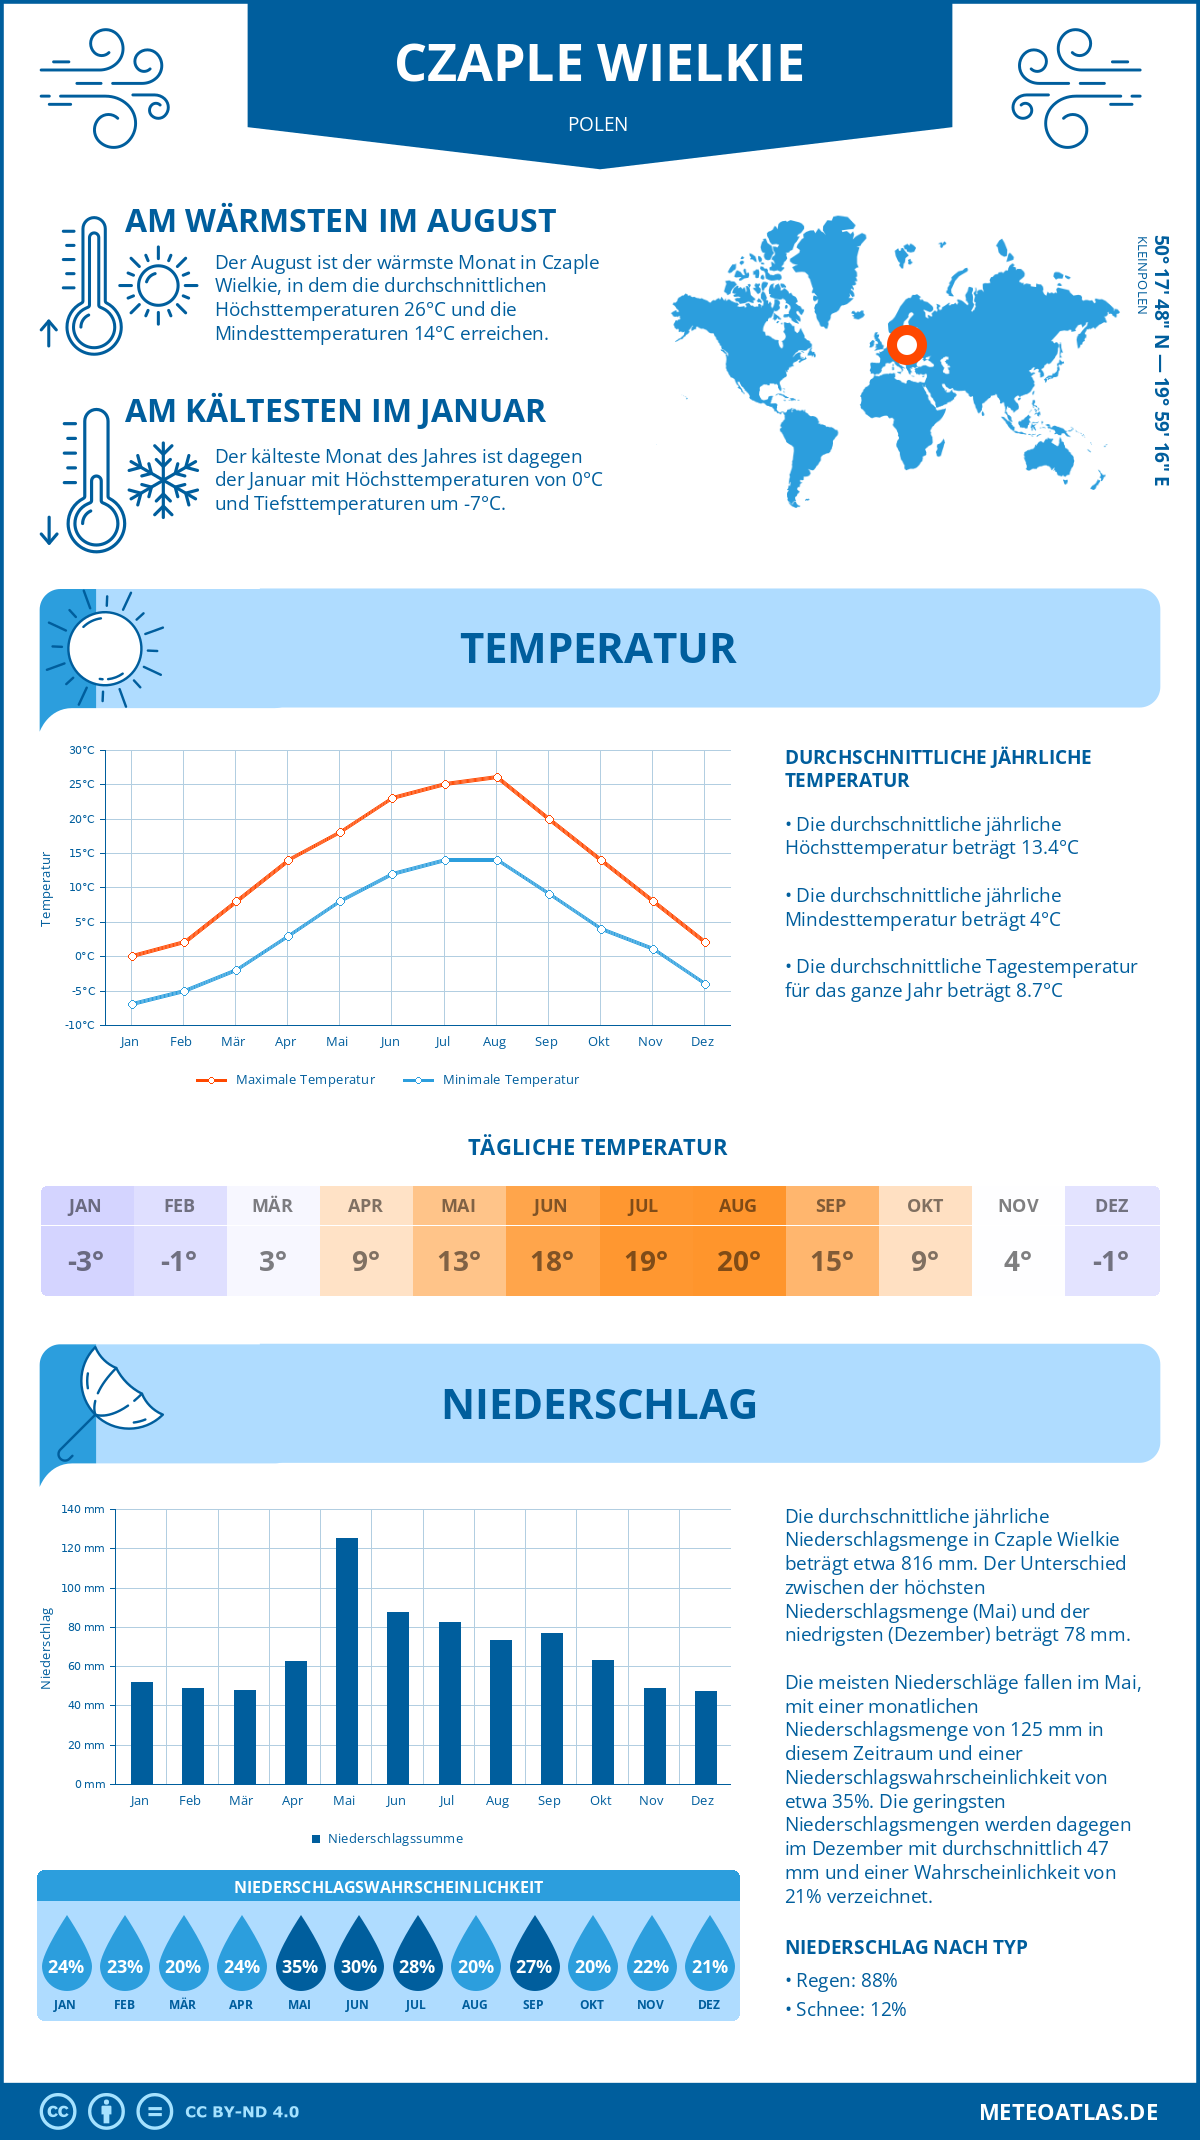 Wetter Czaple Wielkie (Polen) - Temperatur und Niederschlag